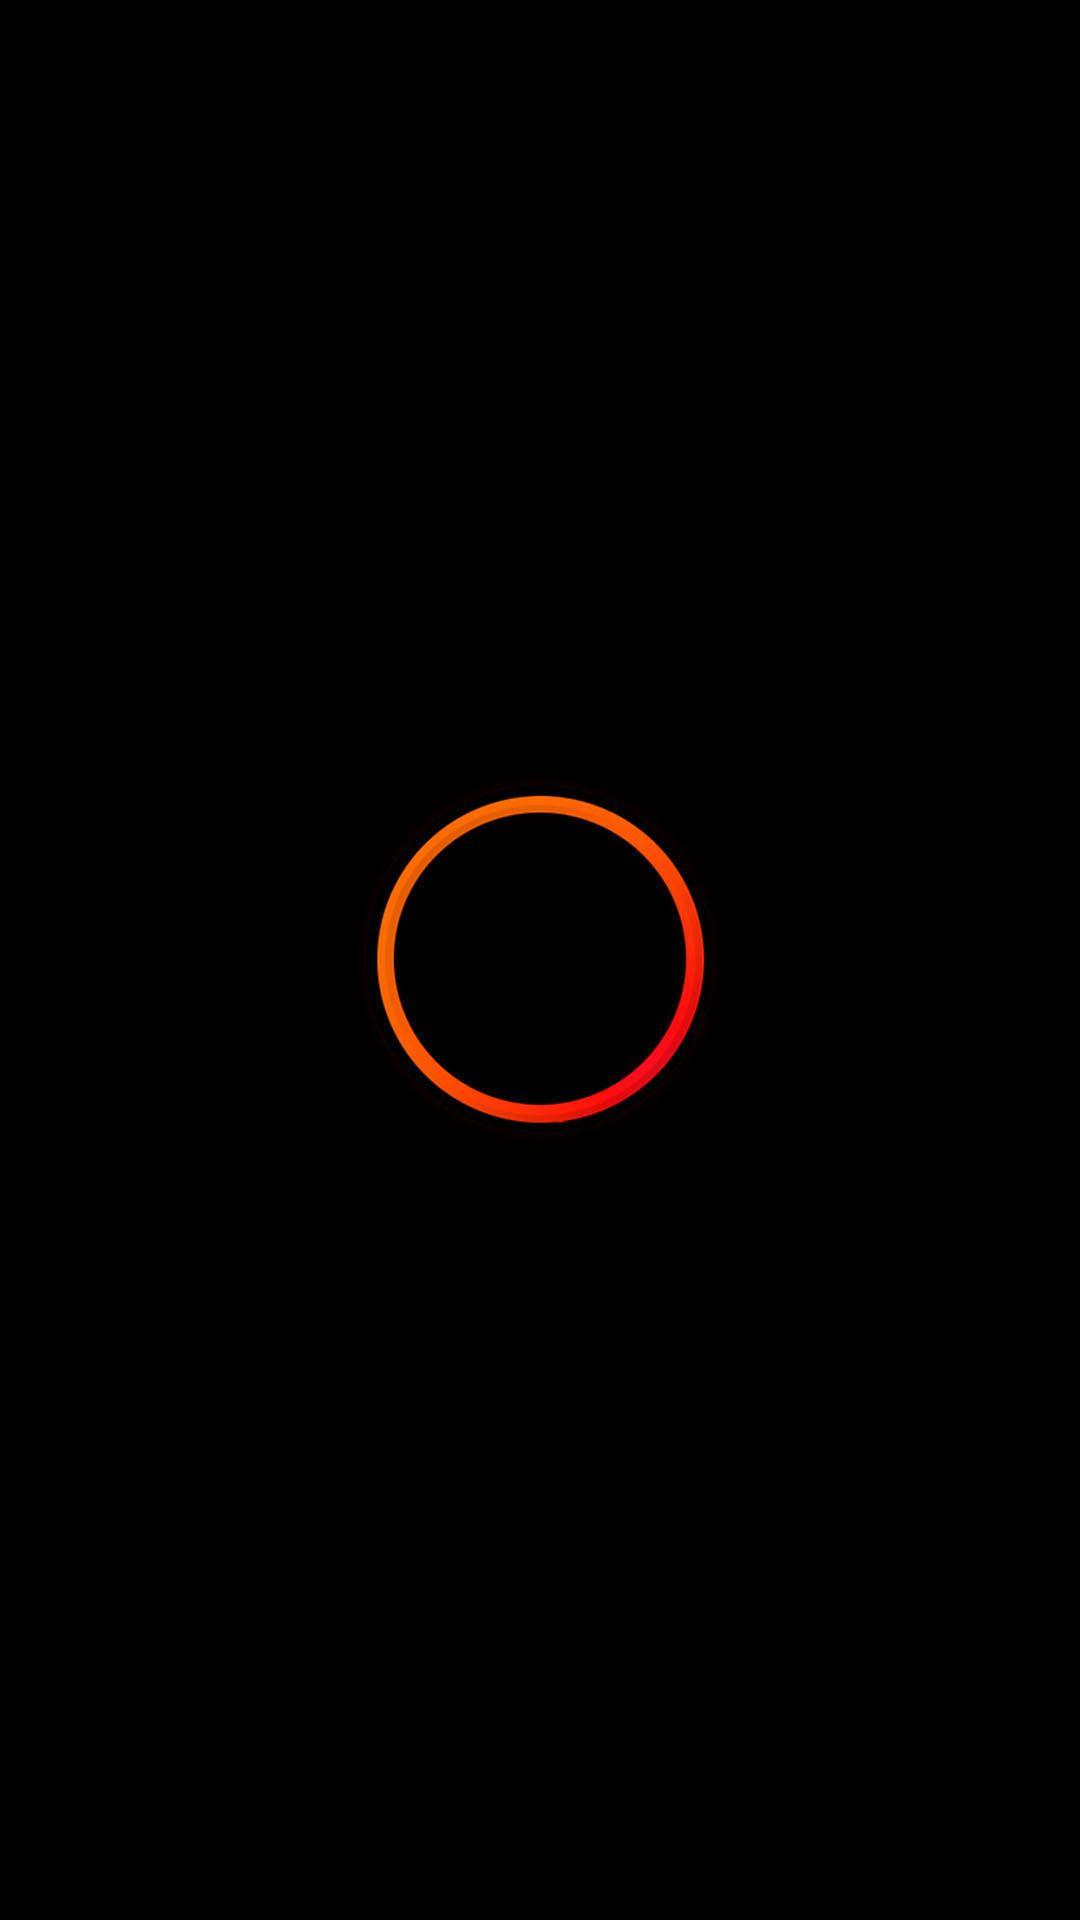 Tải xuống miễn phí Hình nền Android 1080x1920 Orange Circle Minimal